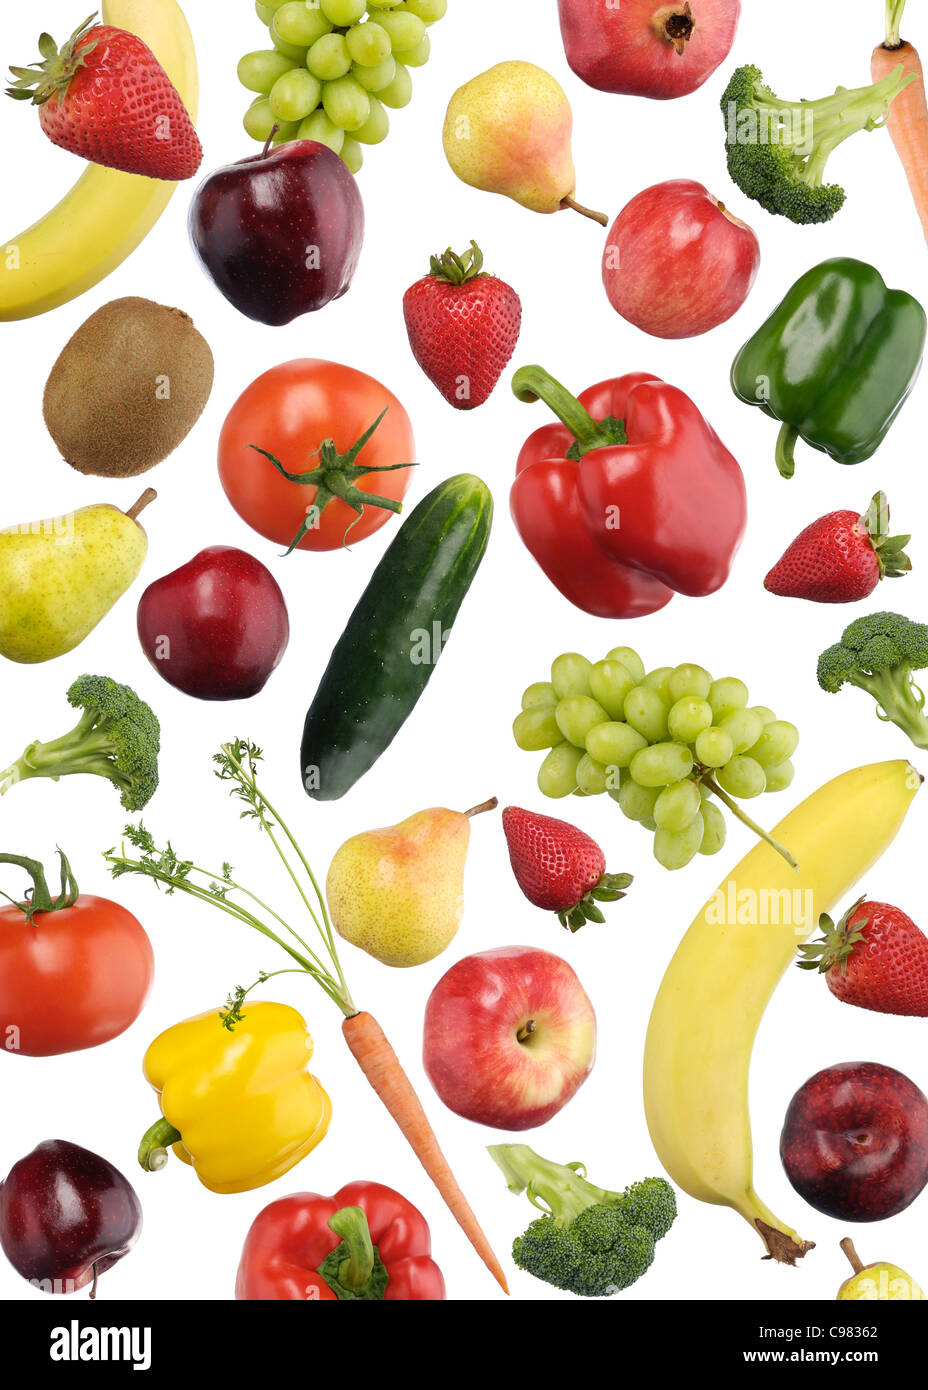 Motif coloré de fruits et de légumes relevant over white background Banque D'Images